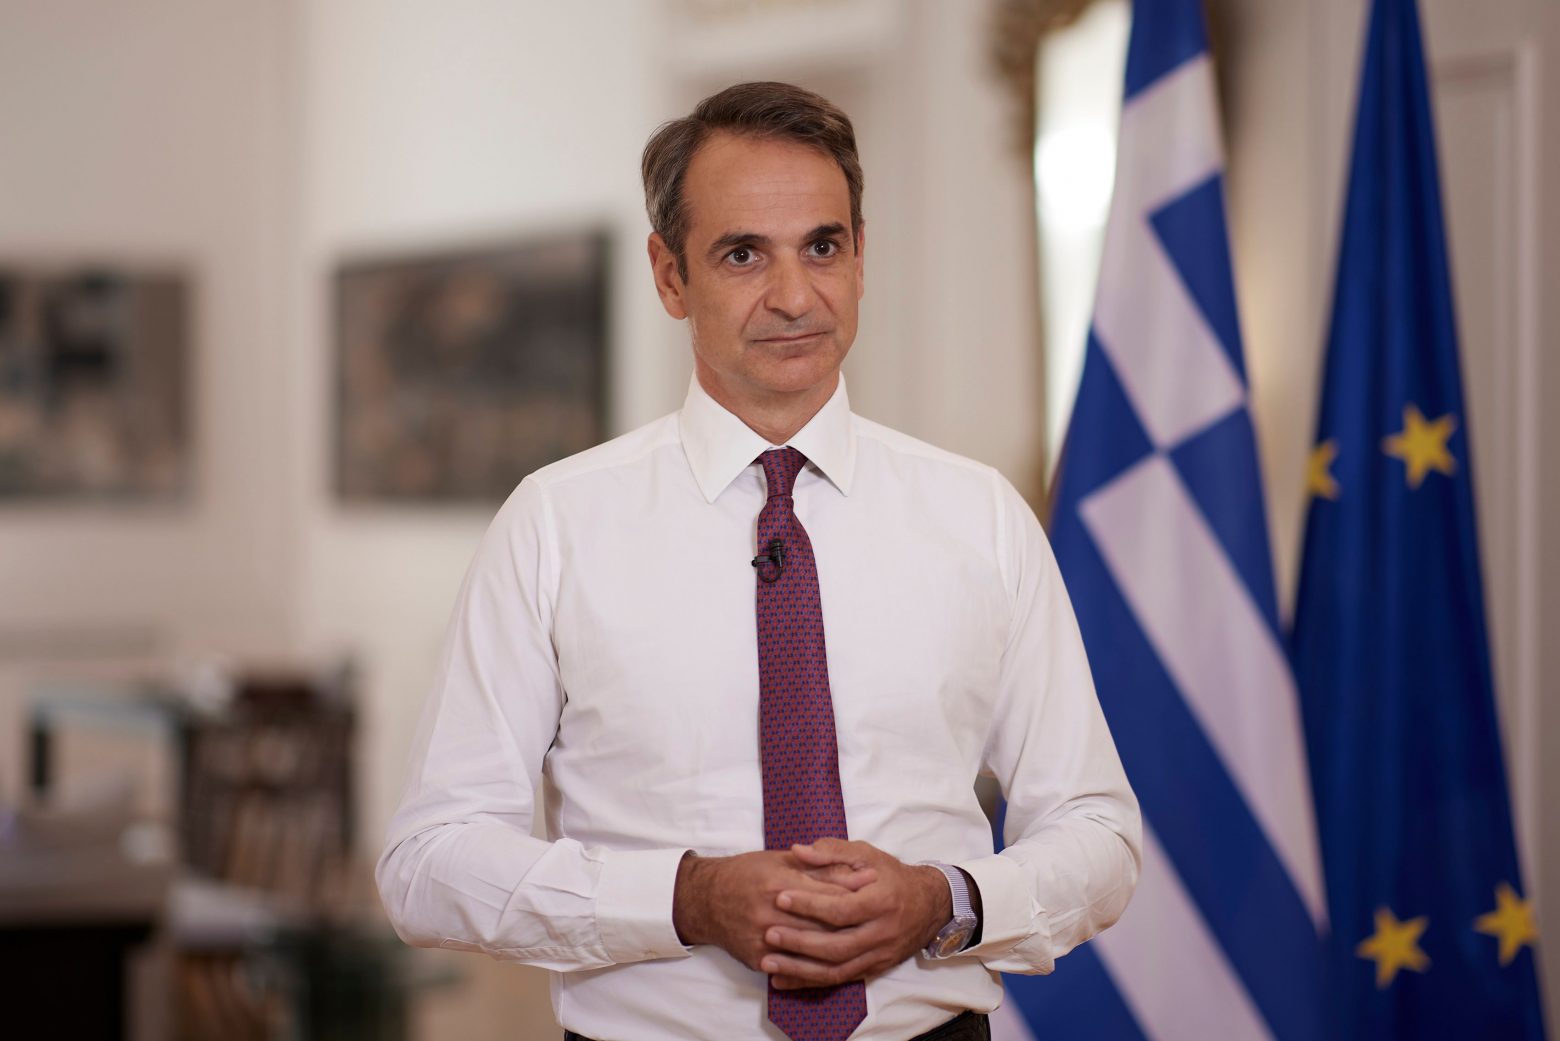 Μητσοτάκης: Δεν κινδυνεύει η Ελλάδα, αλλά οι ανεμβολίαστοι - Η χώρα δεν θα ξανακλείσει λόγω της στάσης ορισμένων